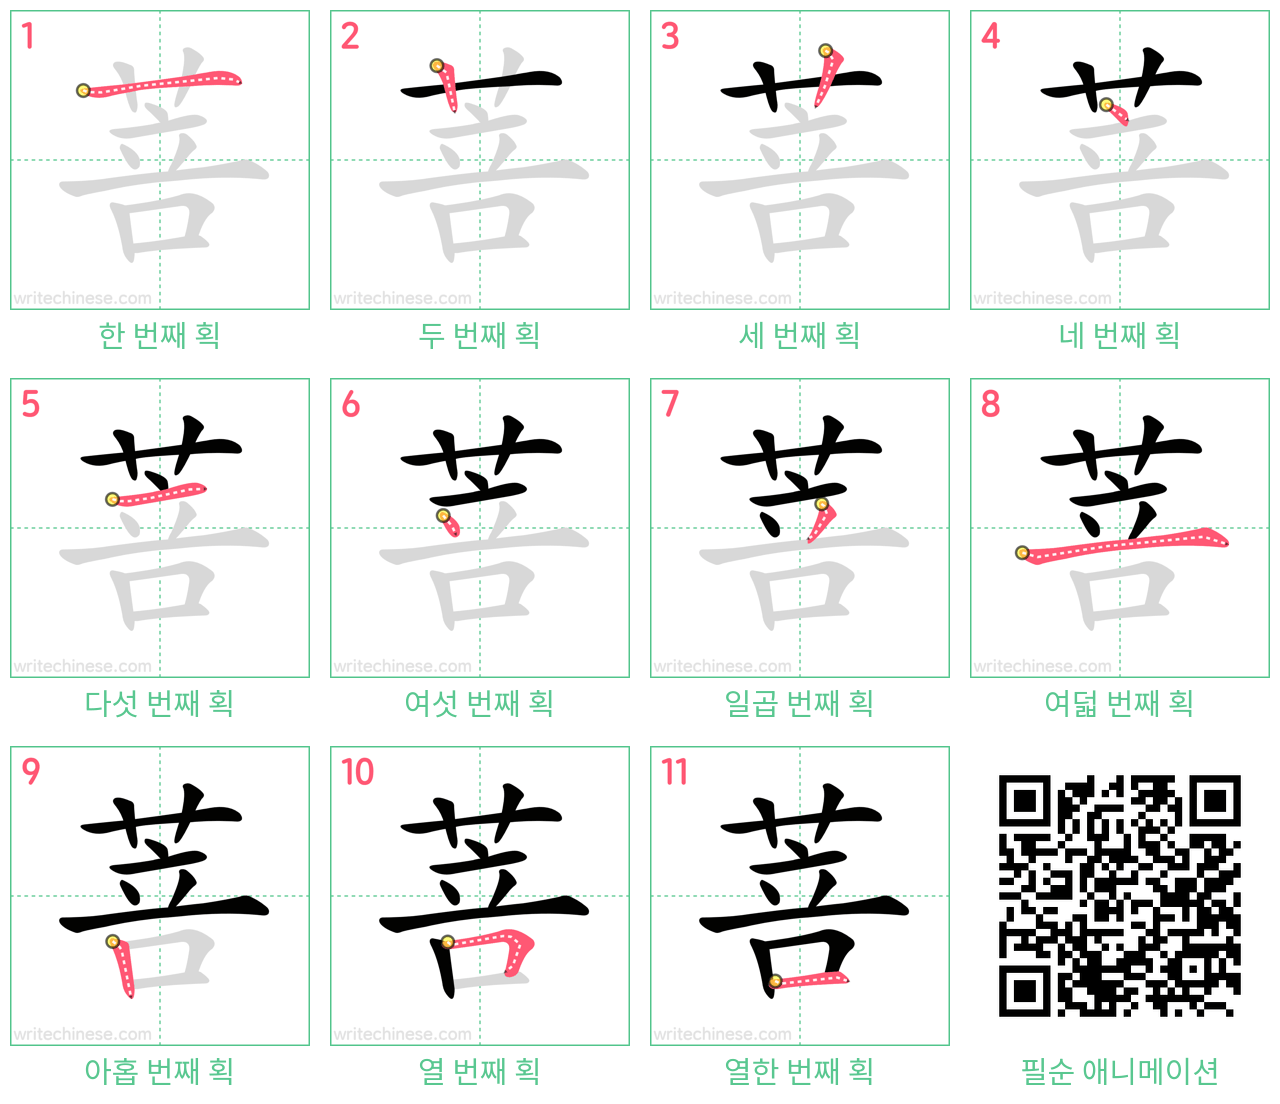 菩 step-by-step stroke order diagrams